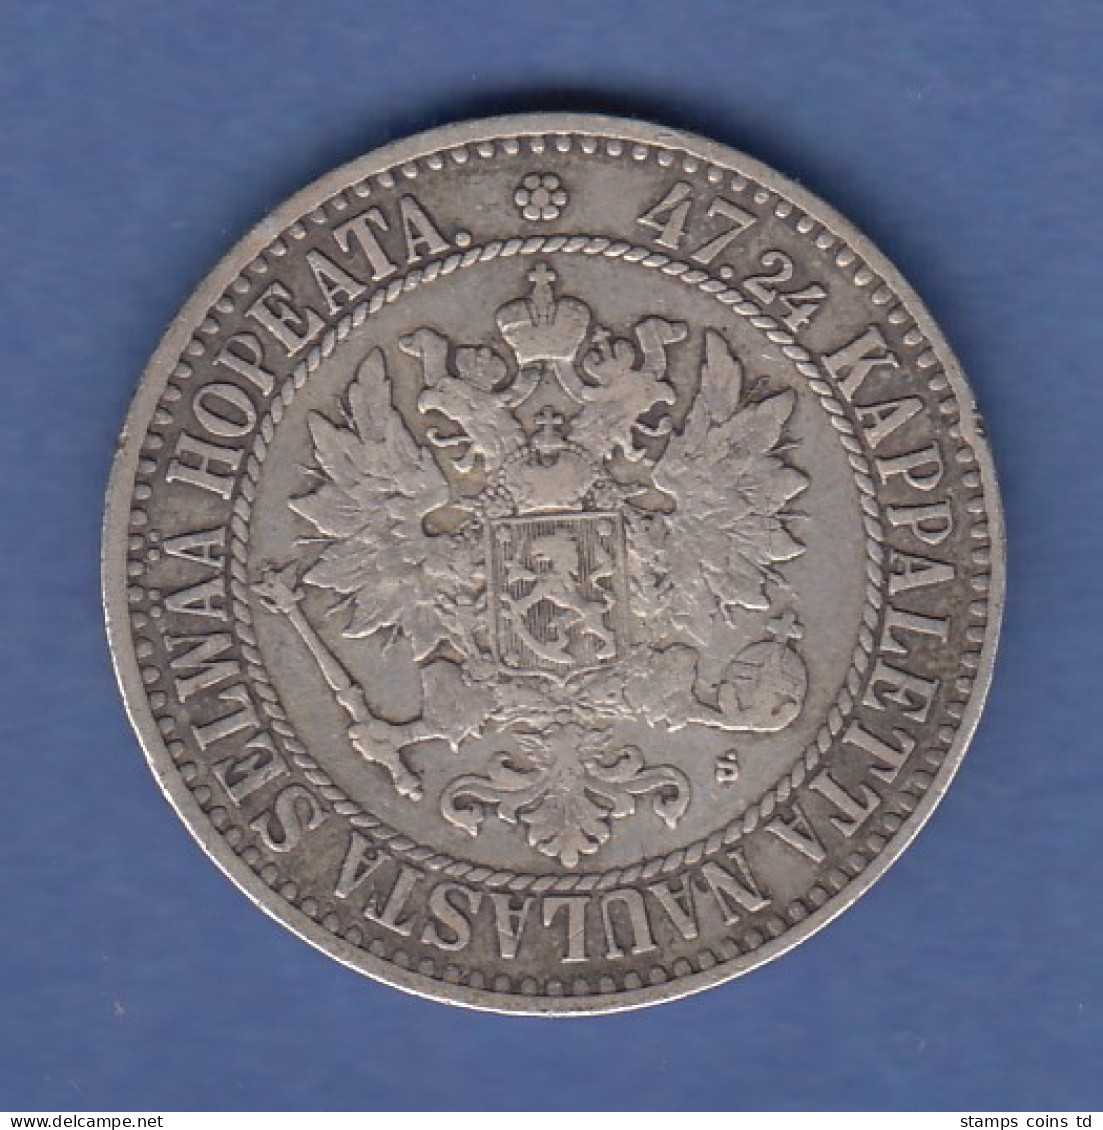 Finnland Silber-Kursmünze 2 MARKKAA Jahrgang 1865 - Finnland